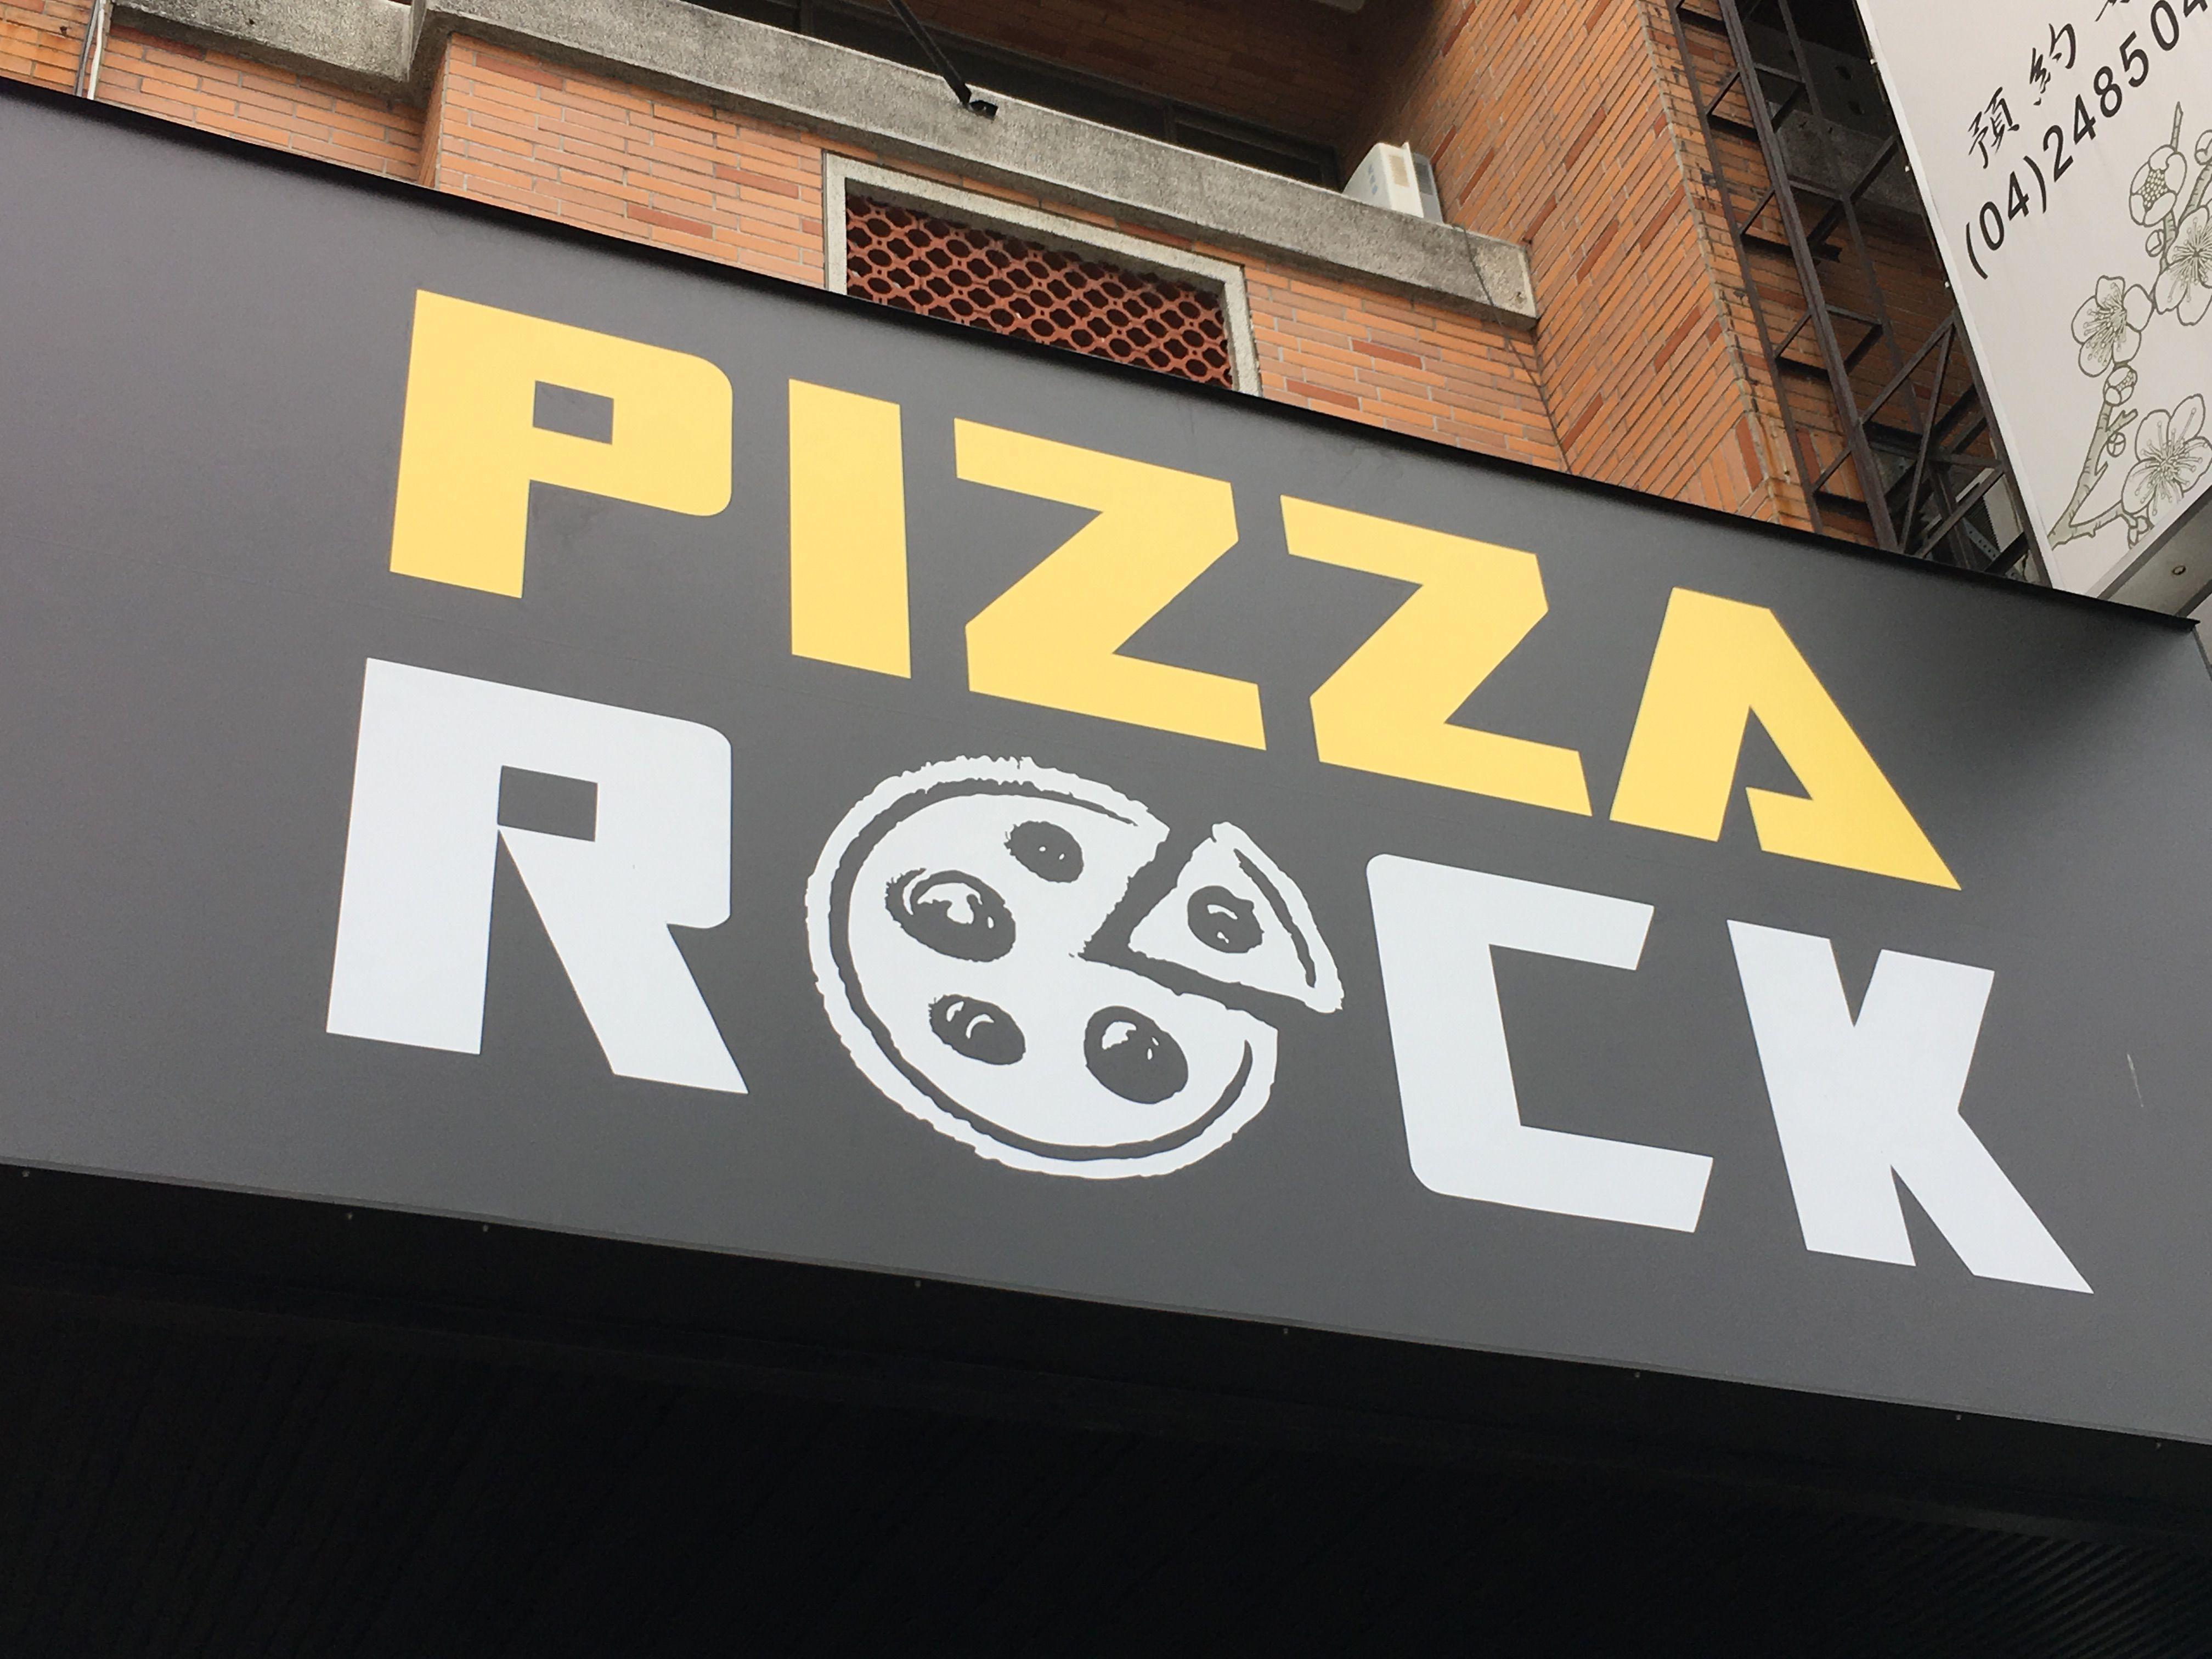 caprese rock pizza